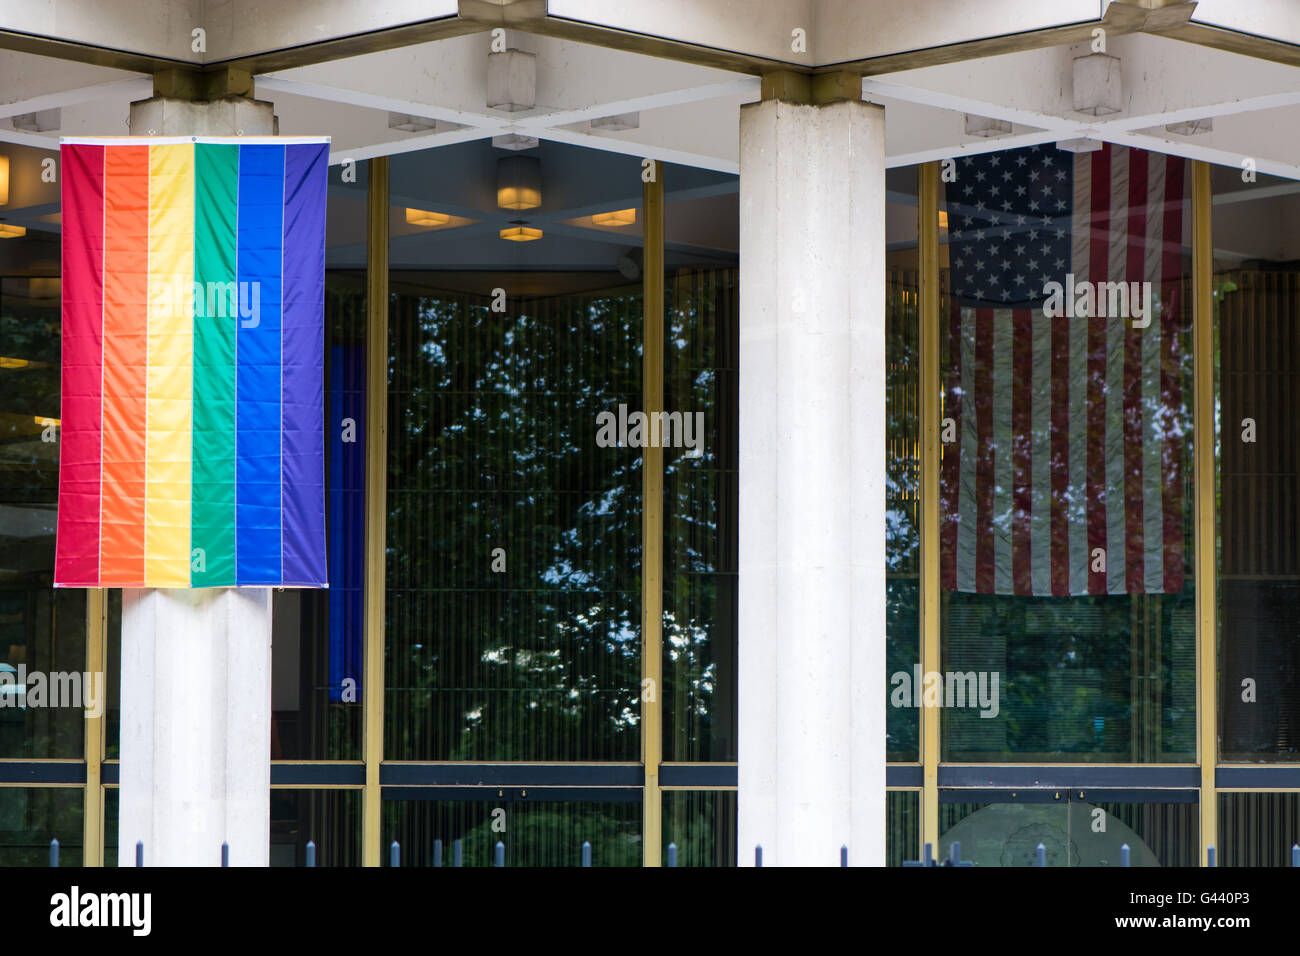 Londres, Royaume-Uni - 16 juin 2016 drapeau arc-en-ciel avec des étoiles et des rayures à l'ambassade des États-Unis, Londres, après le meurtre de 49 personnes à Orlando Banque D'Images